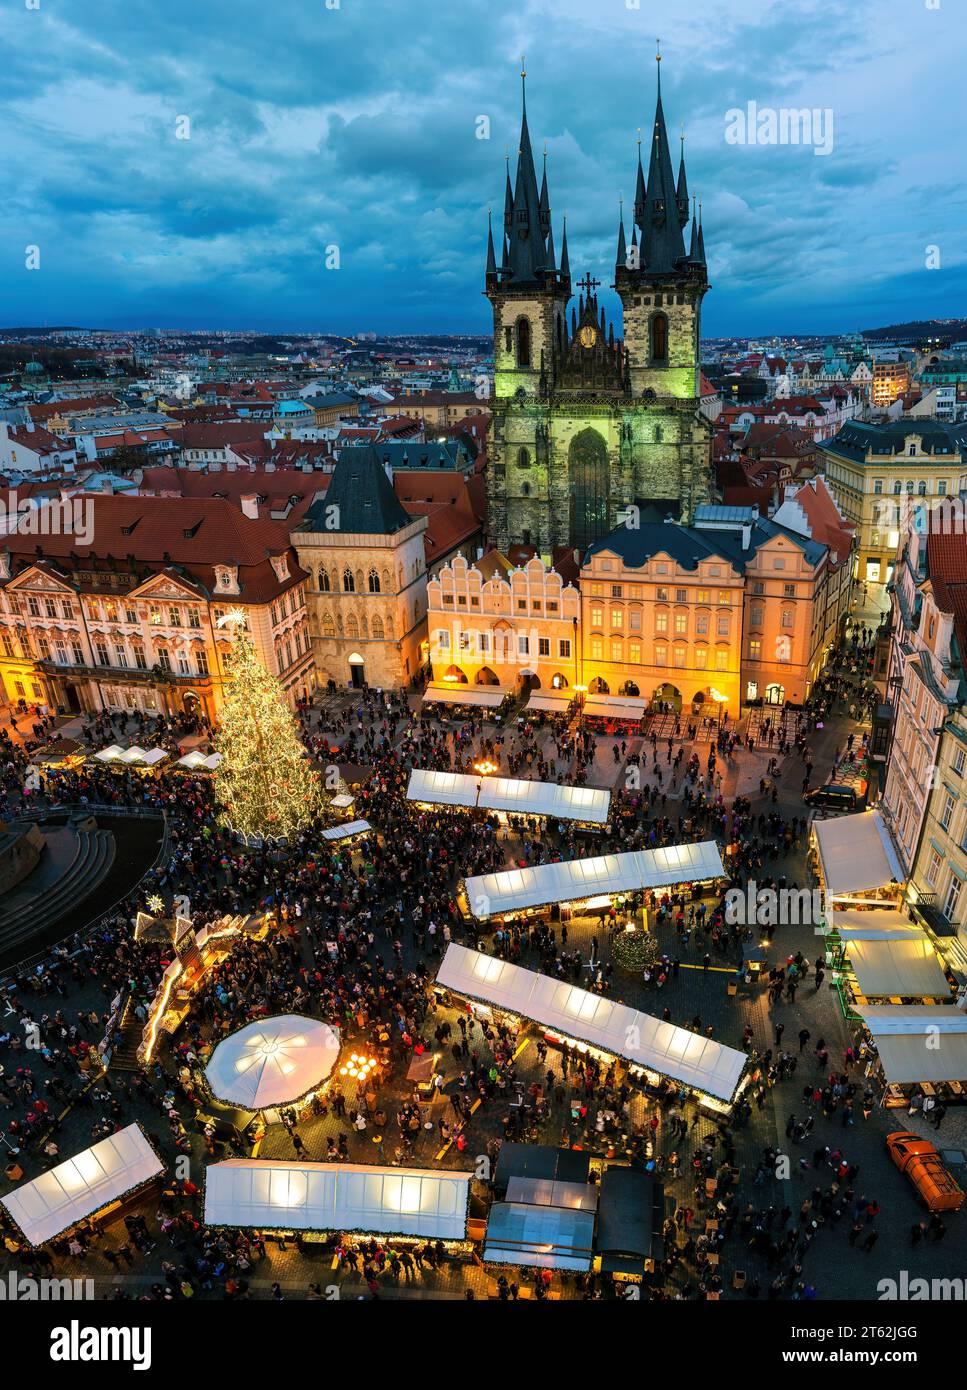 Aus der Vogelperspektive auf den berühmten Weihnachtsmarkt am Abend auf dem Altstädter Ring als Tyn-Kirche im Hintergrund in Prag, Tschechien. Stockfoto